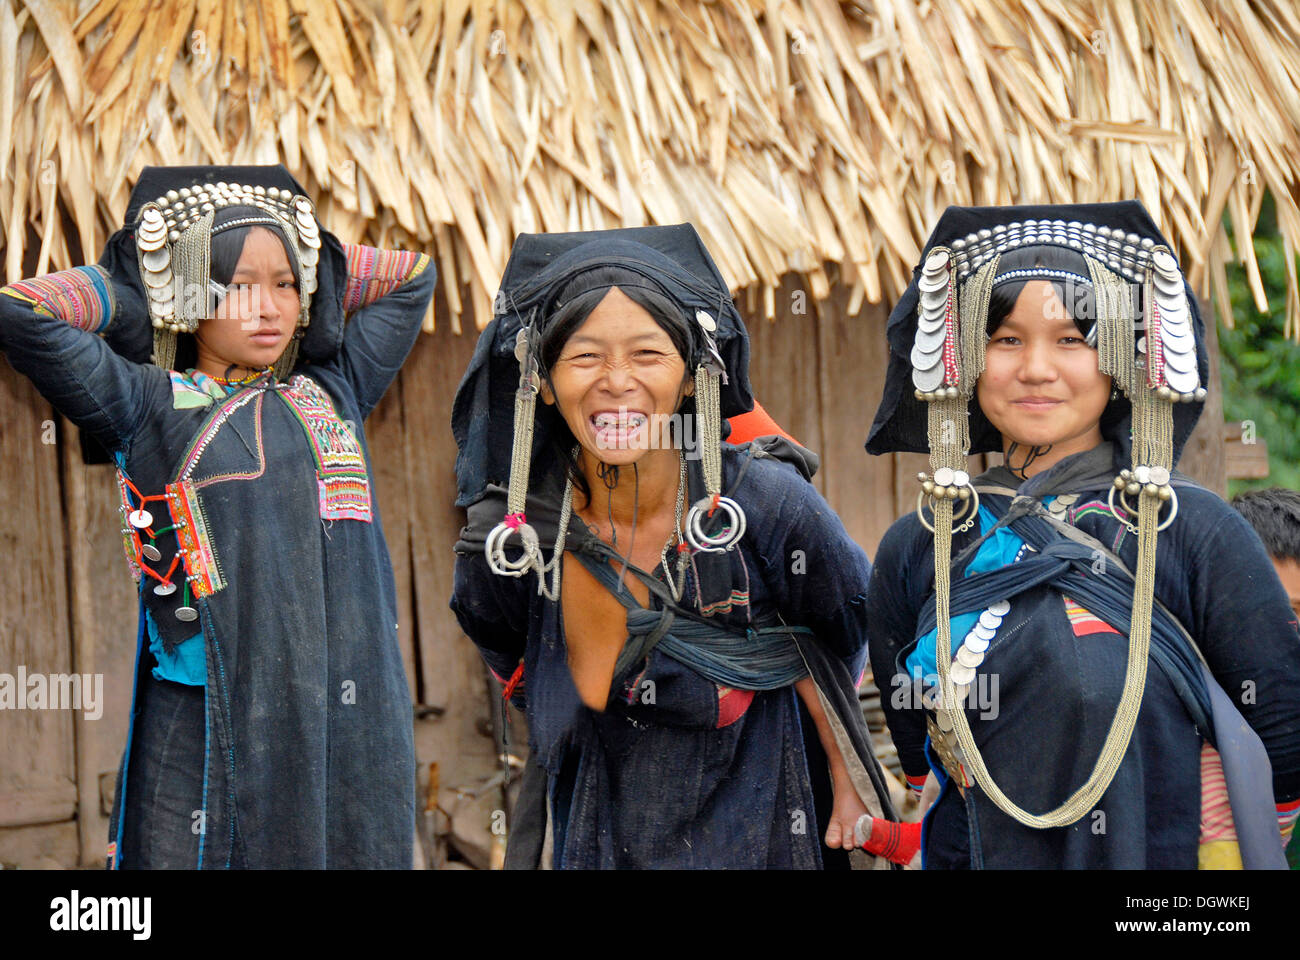 Photo de groupe, de rire des femmes du groupe ethnique akha Phixor, vêtements traditionnels teints à l'indigo Banque D'Images